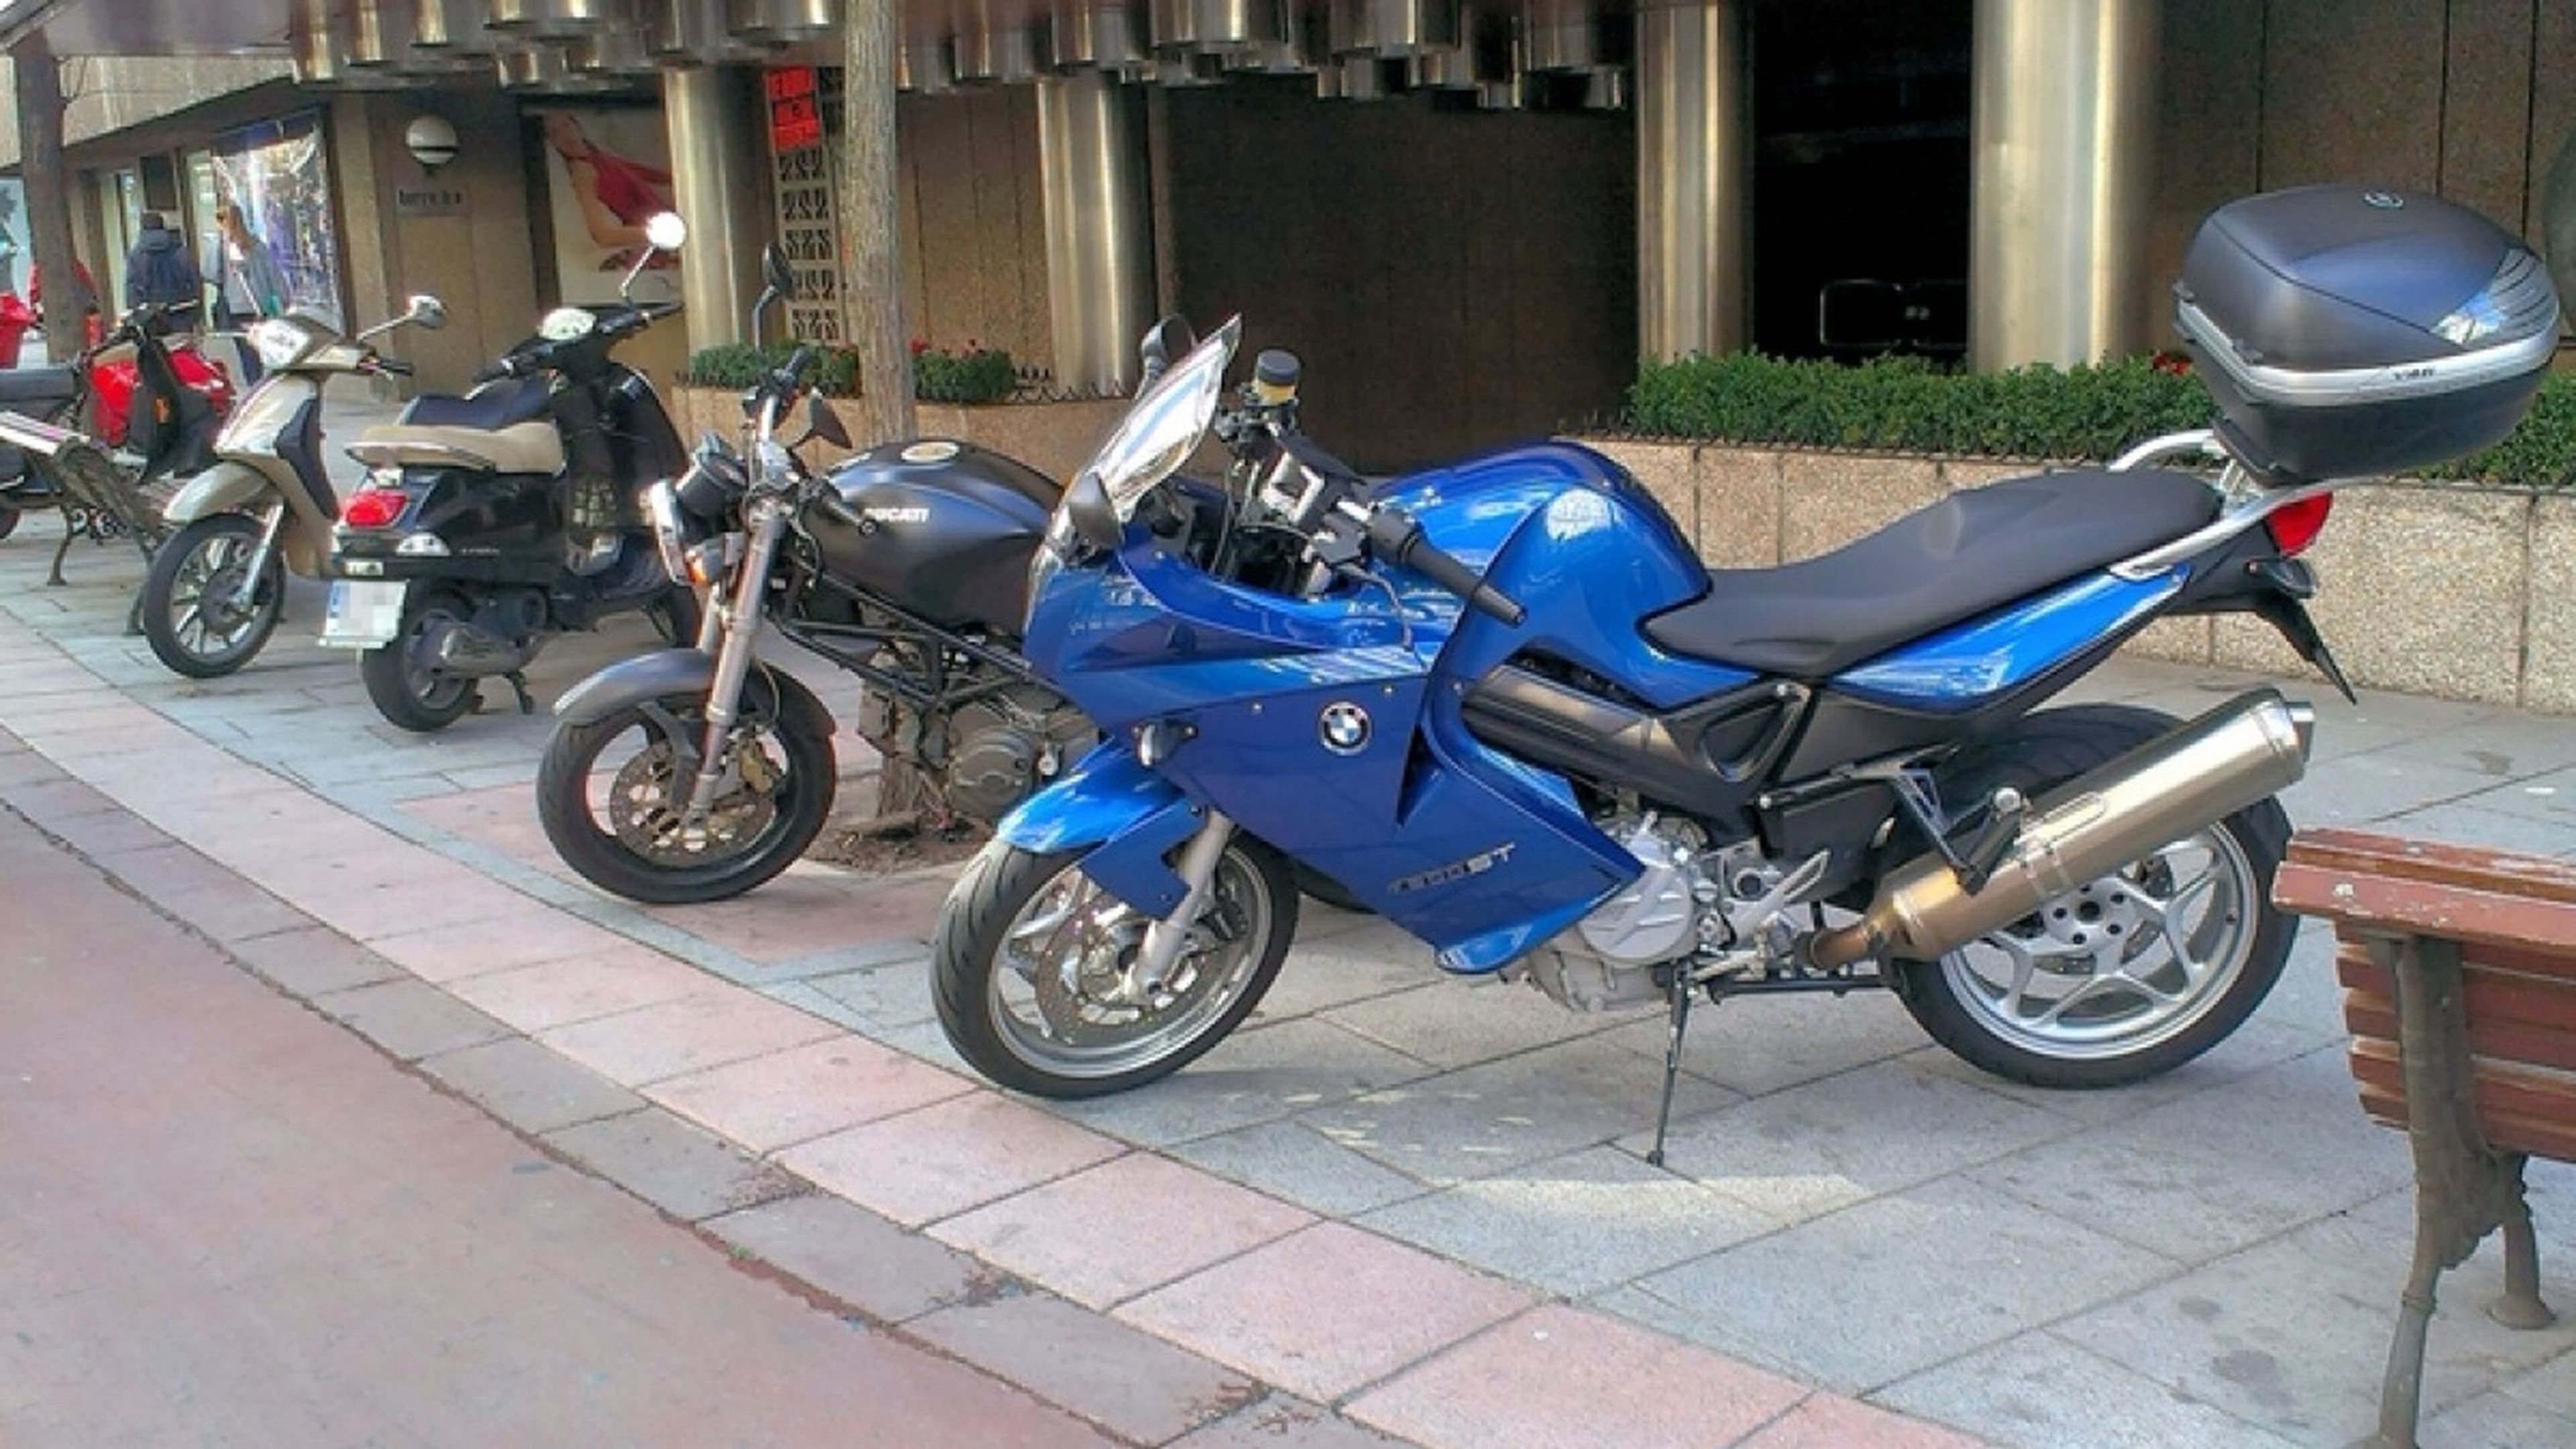 aparcar-motos-ciudad-acera